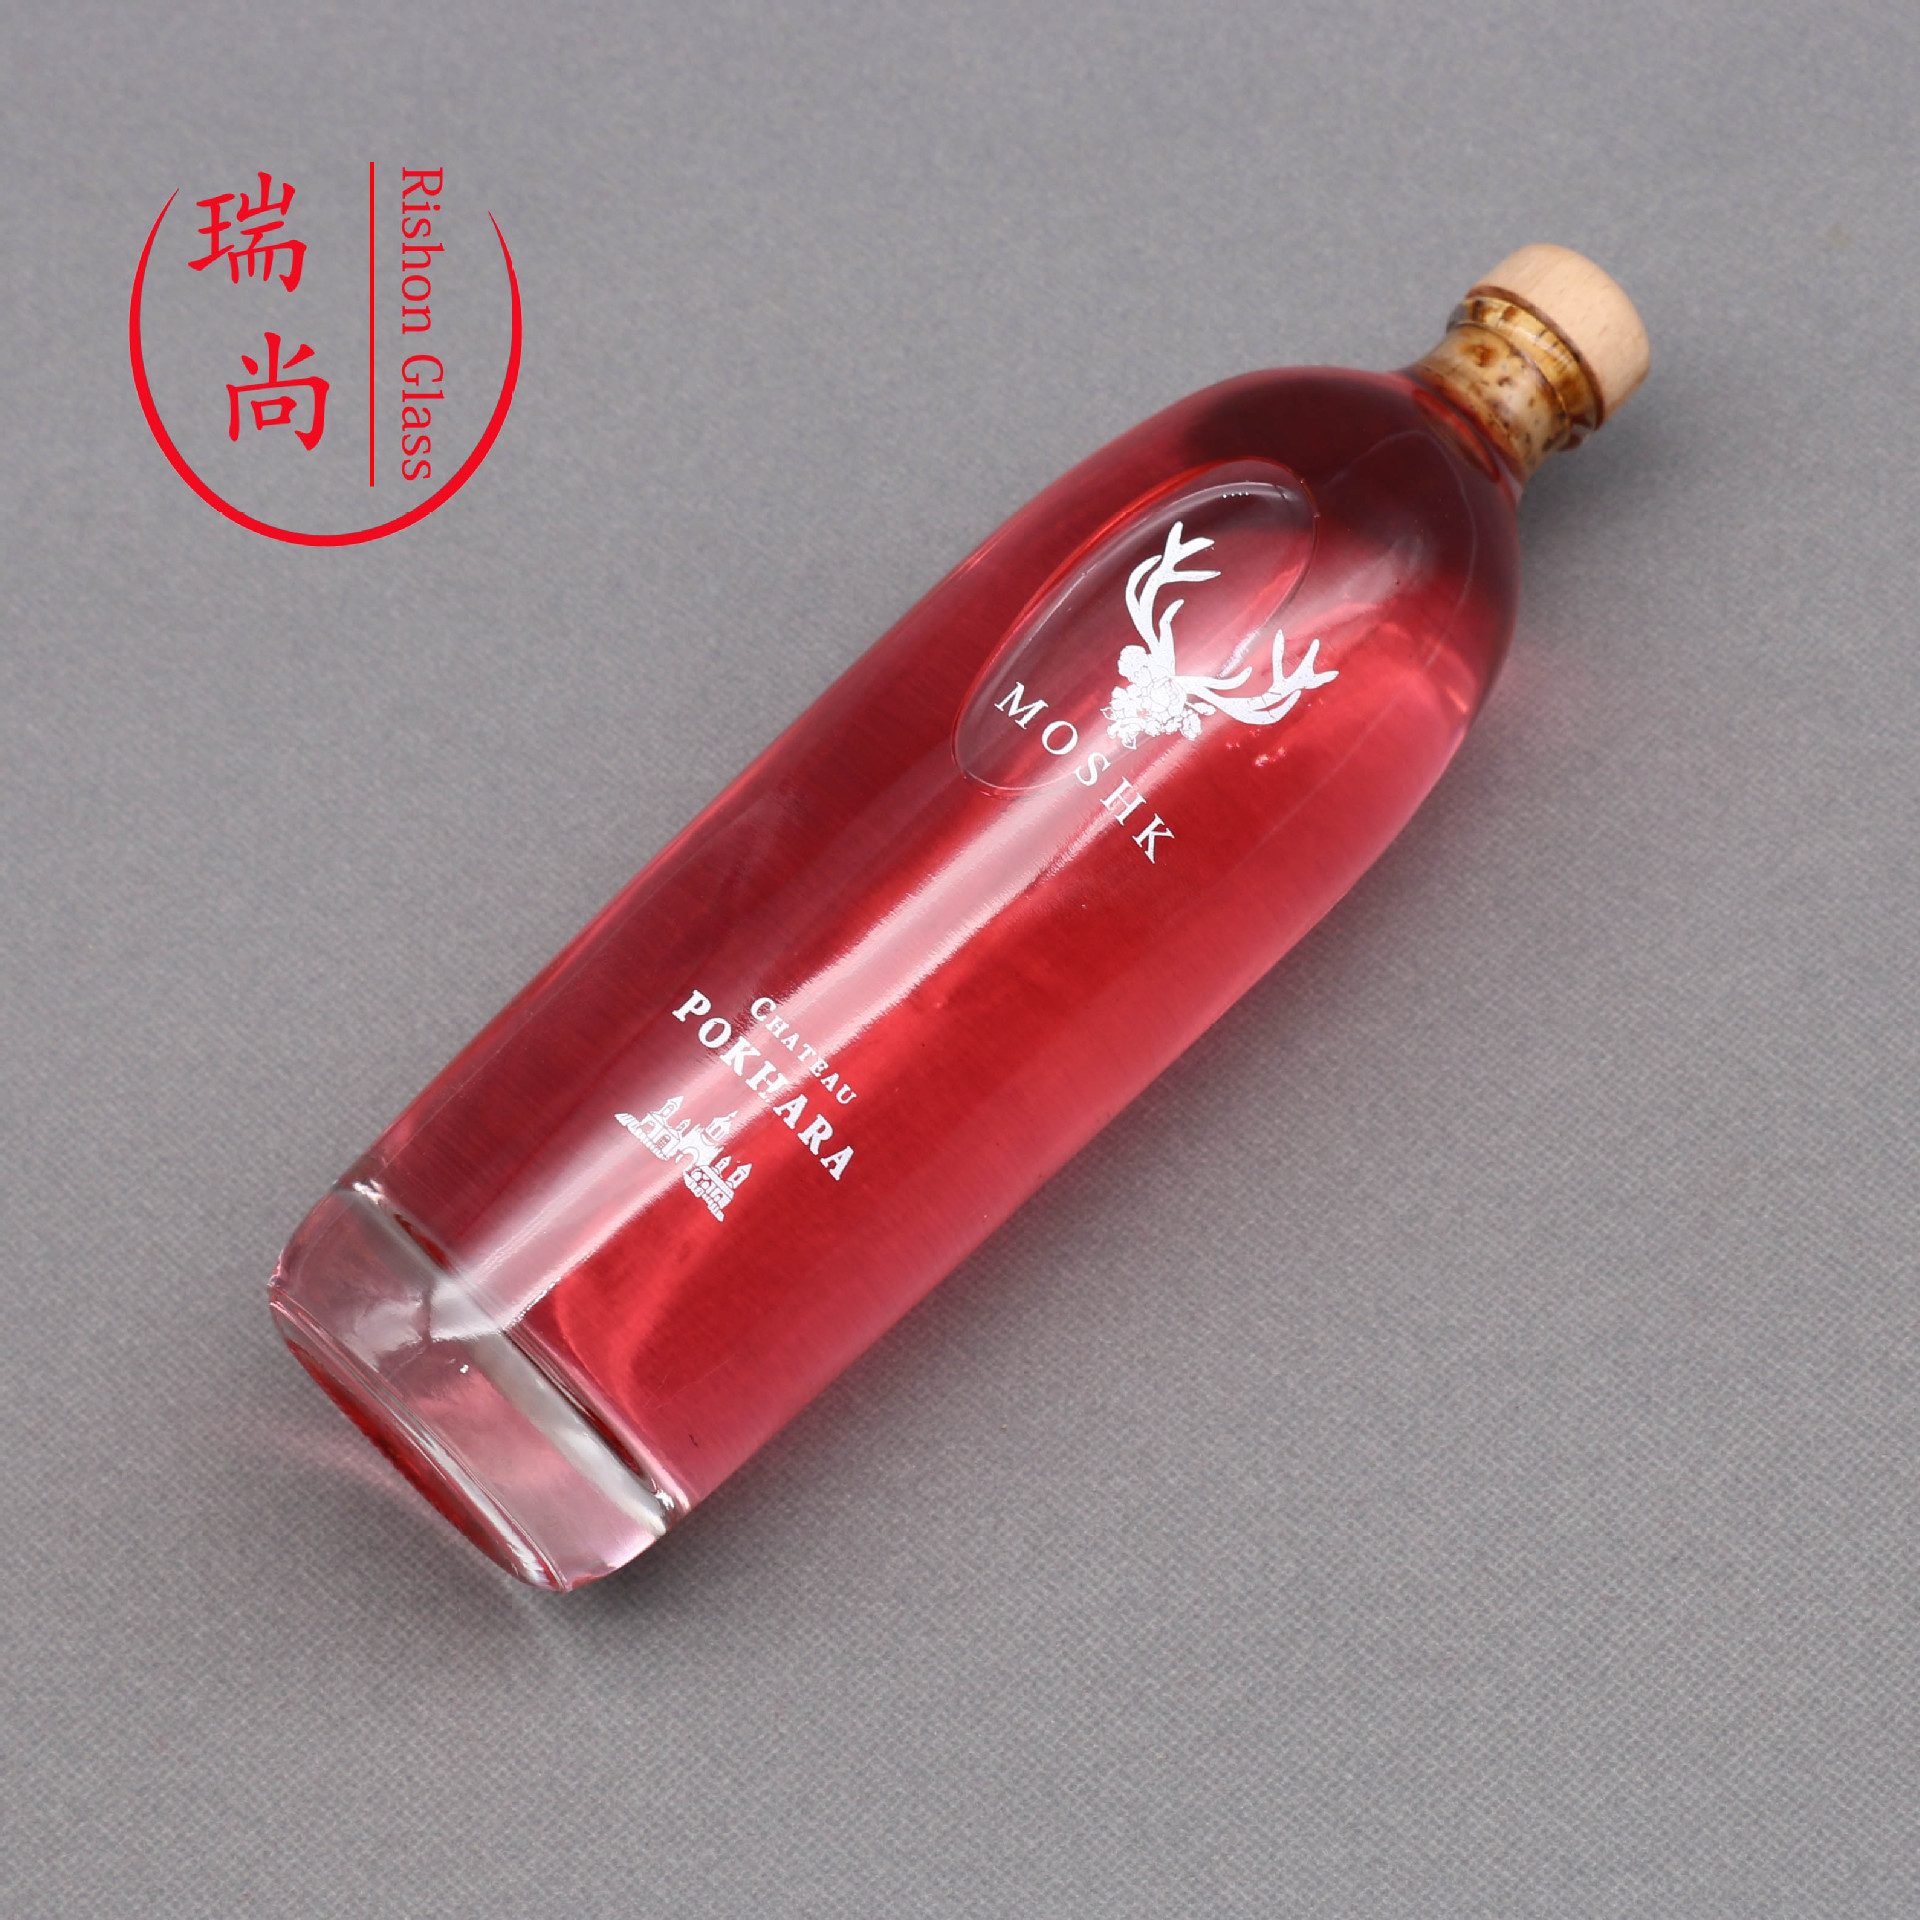 玻璃瓶酒瓶500ml果酒瓶厚底红酒瓶晶白料红酒瓶木塞玻璃洋酒瓶示例图6